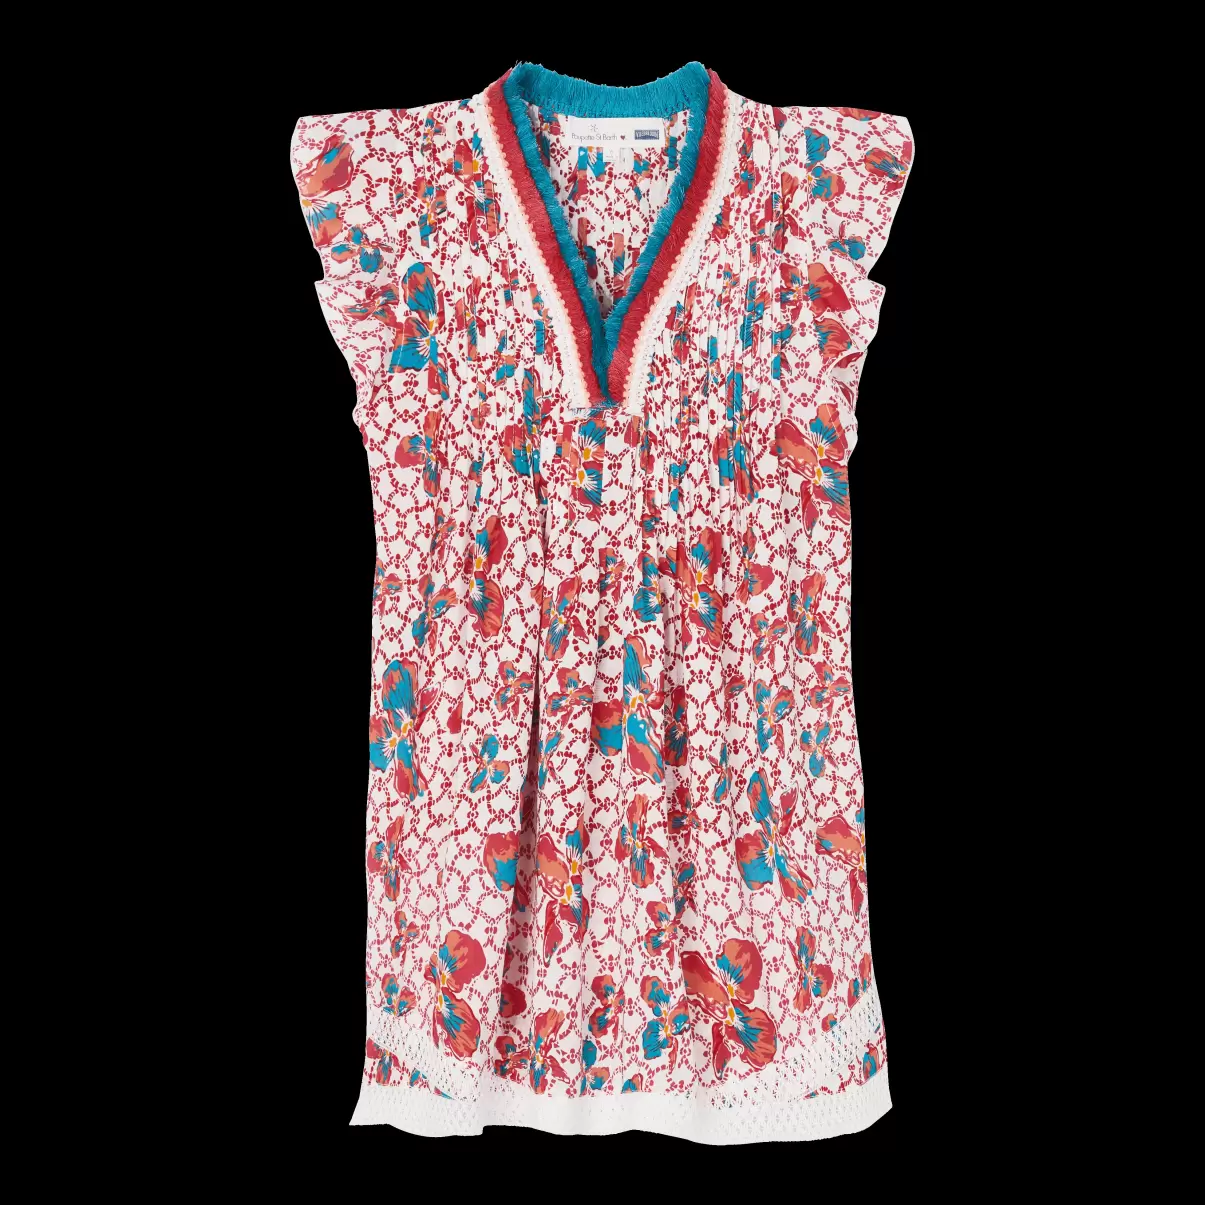 Kleider Iris Lace Minikleid Für Mädchen Popularität Vilebrequin Mohnrot / Rot Mädchen